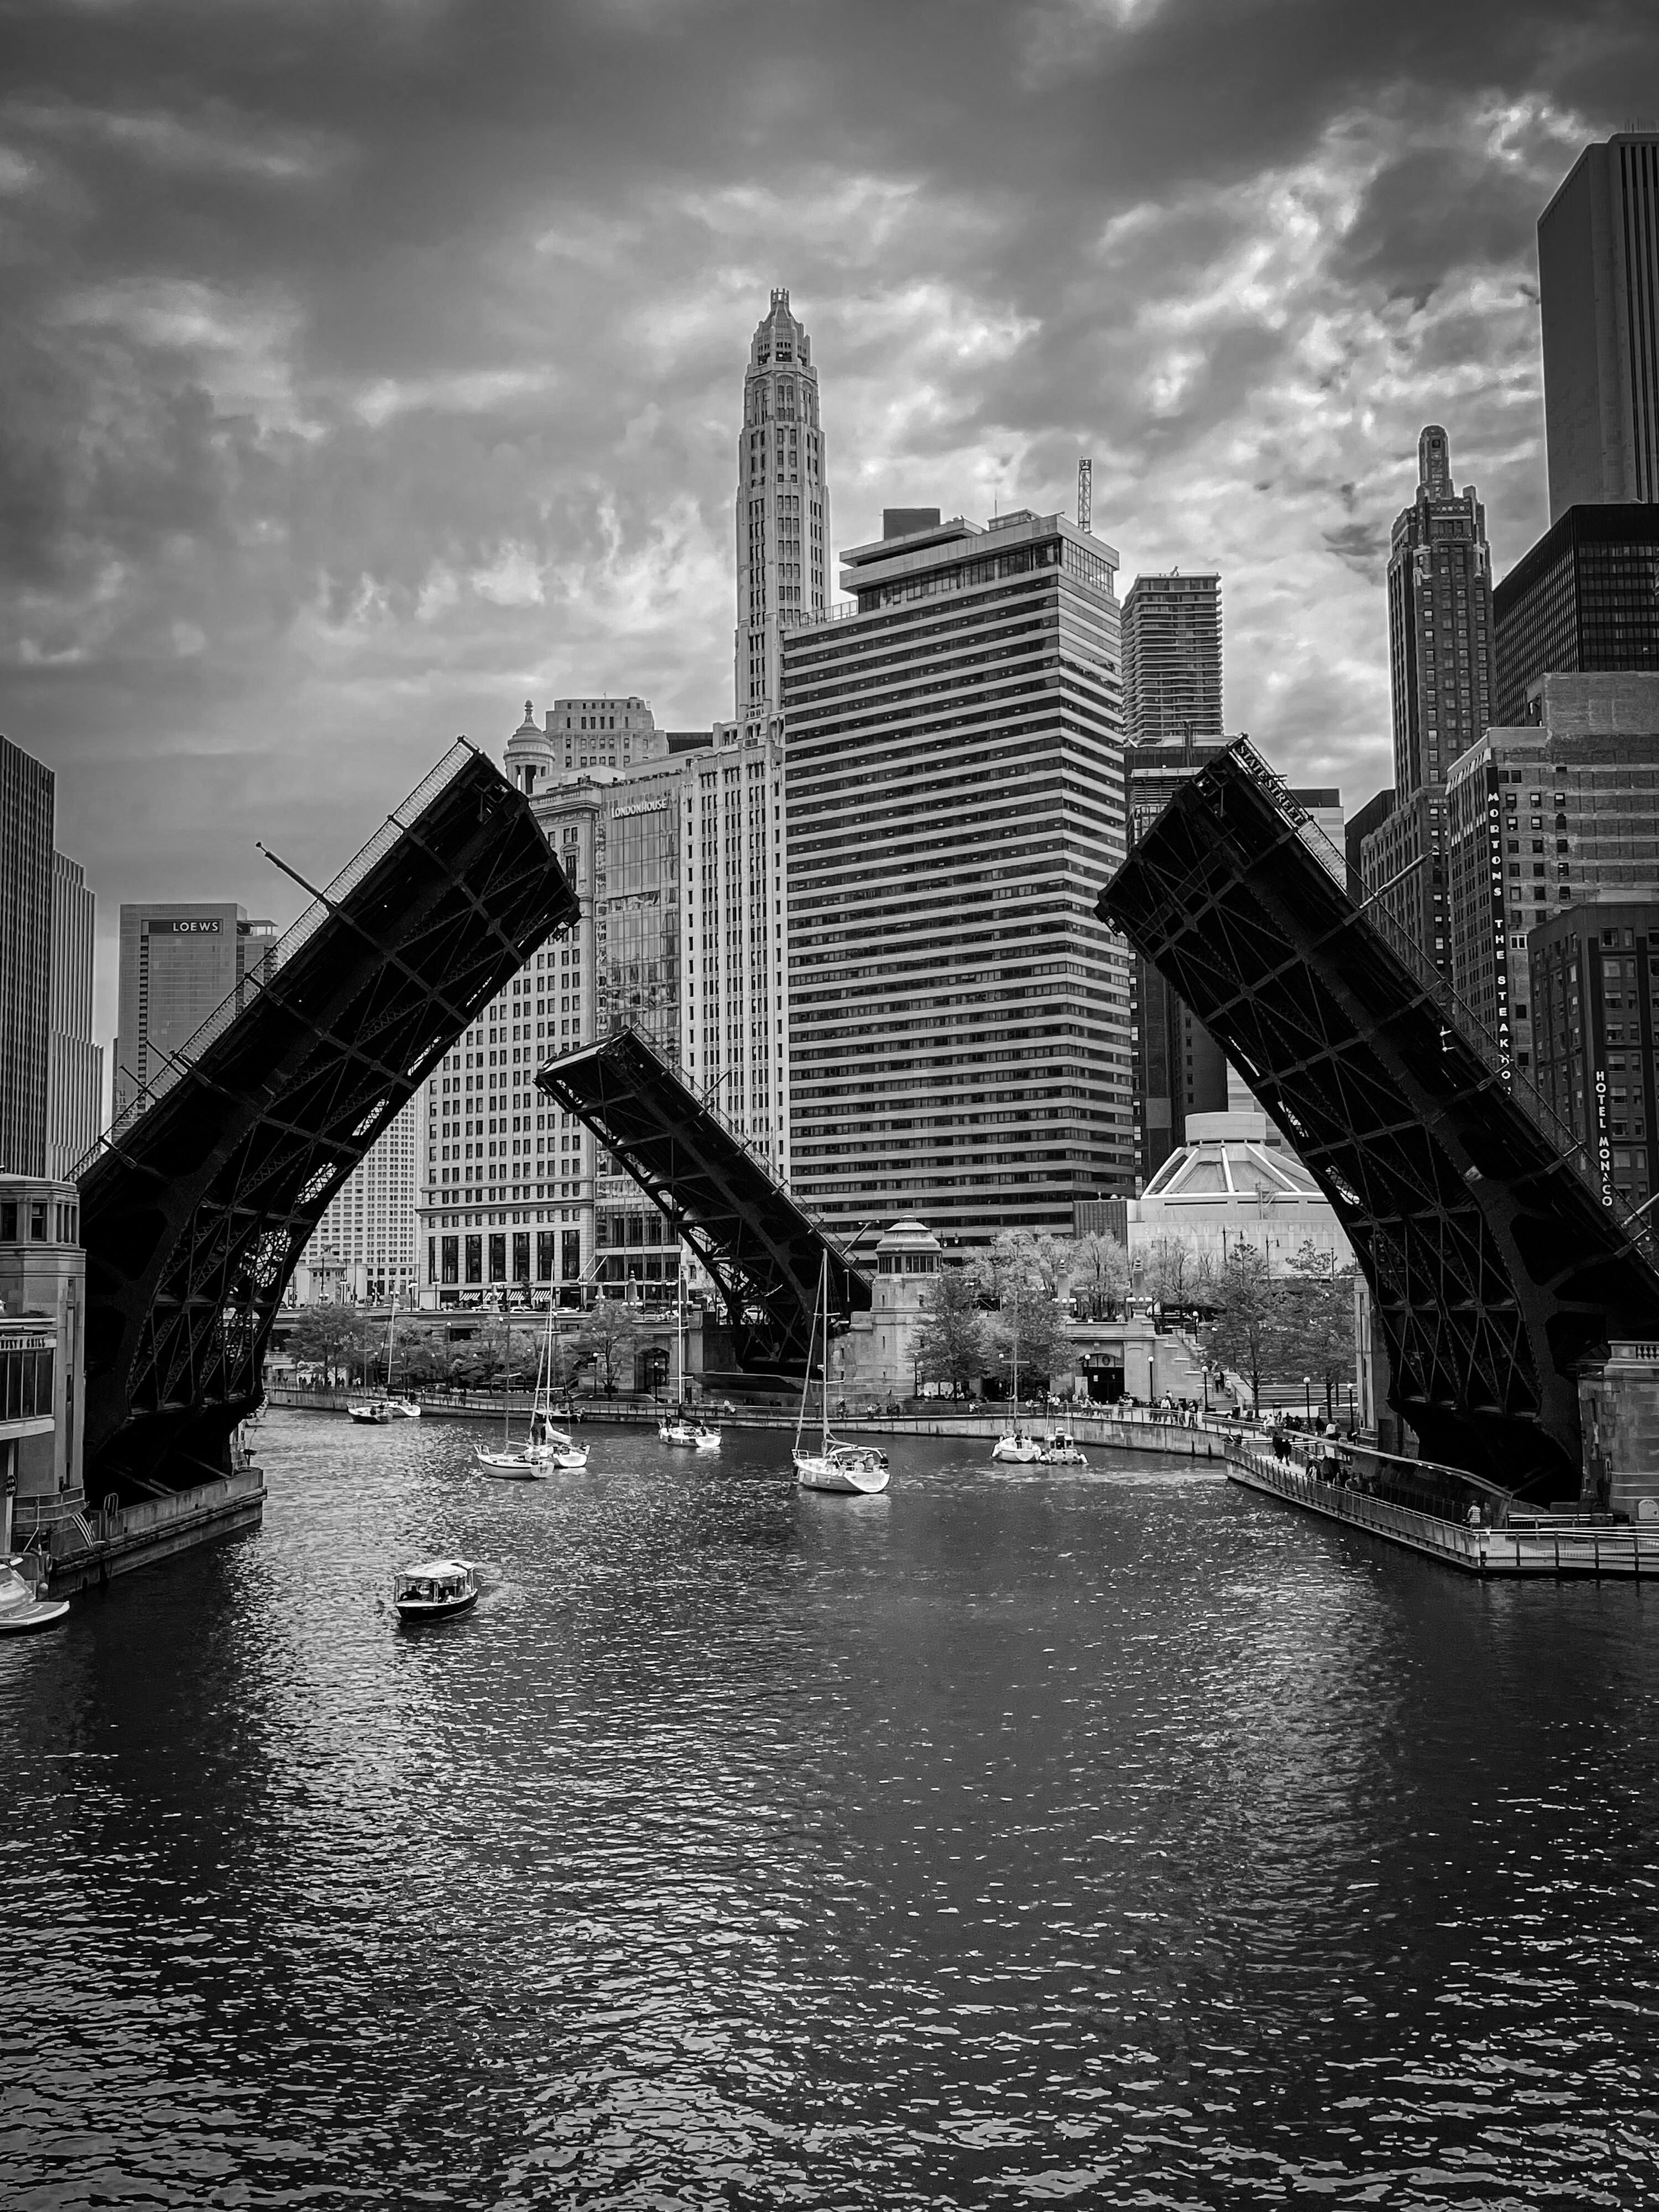 Финалист в категории Мобильная фотография, 2021. Город мостов. Чикаго, Иллинойс, США. Автор Лам Хоанг